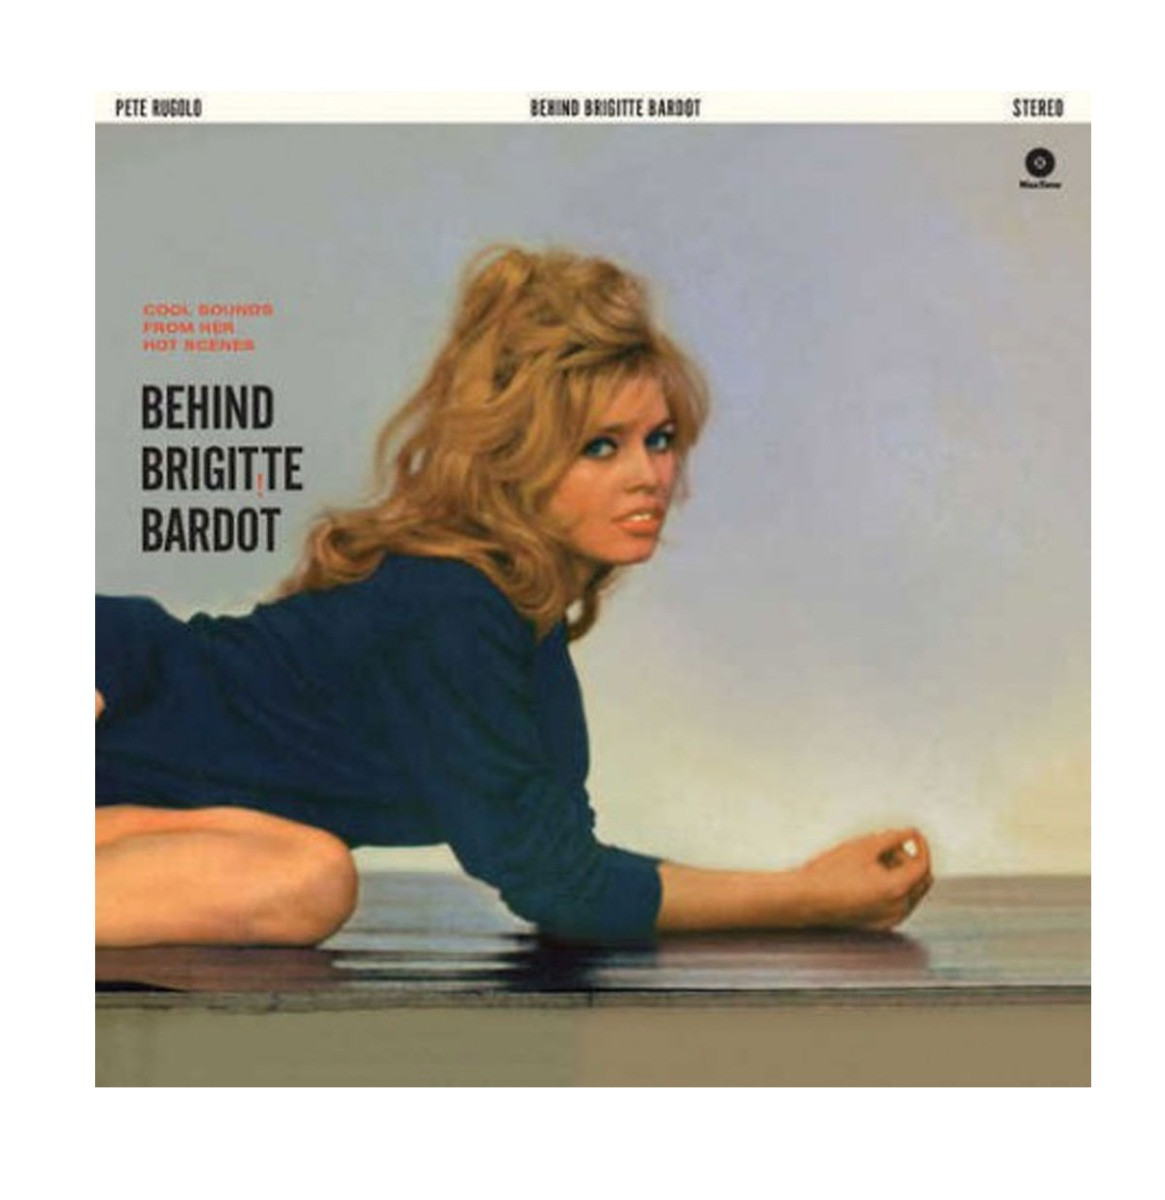 Behind Brigitte Bardot LP